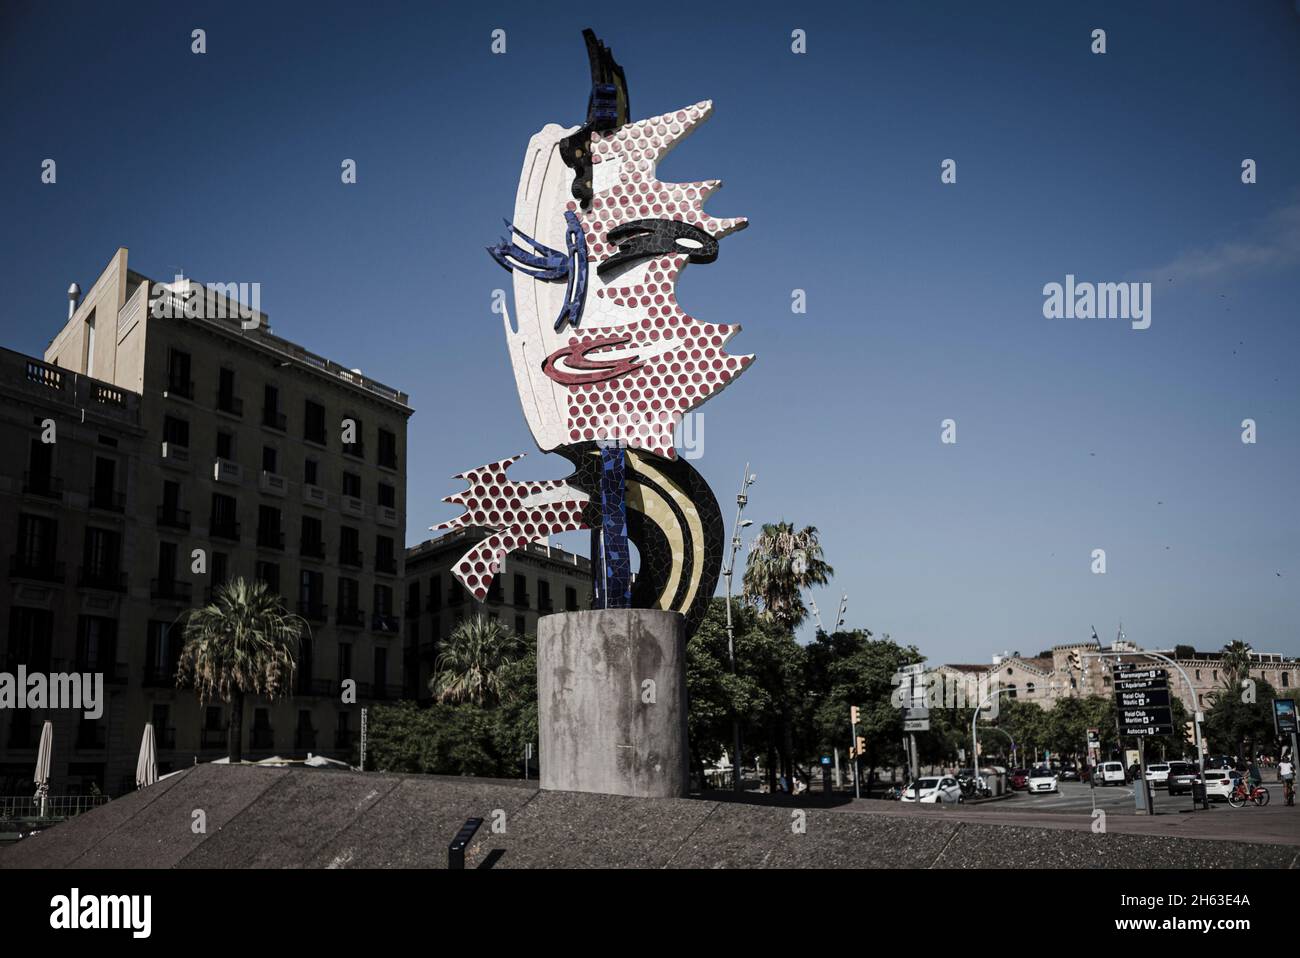 el cap de barcelona est une sculpture créée par l'artiste pop américain roy lichtenstein pour les jeux olympiques d'été 1992 à barcelone. Banque D'Images